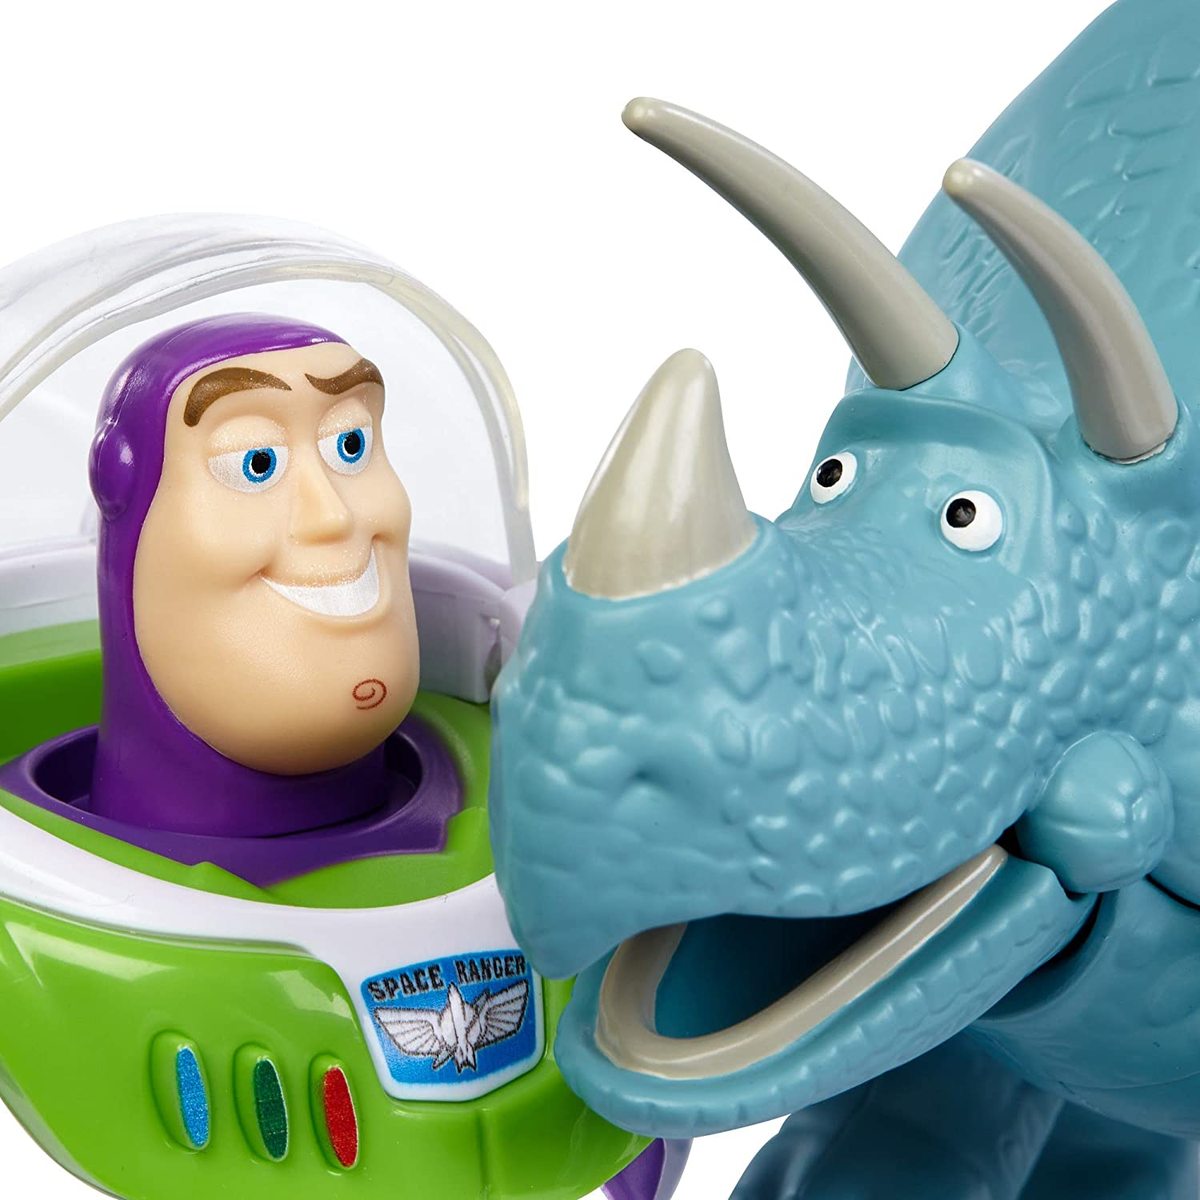 楽天市場 マテル トイストーリー バズ ライトイヤー トリクシー フィギュア ディズニー ピクサー Mattel Toy Story Buzz Lightyear Trixie Disney Pixar トイ ストーリー おもちゃ 男の子 女の子 子供 Lang By Aca